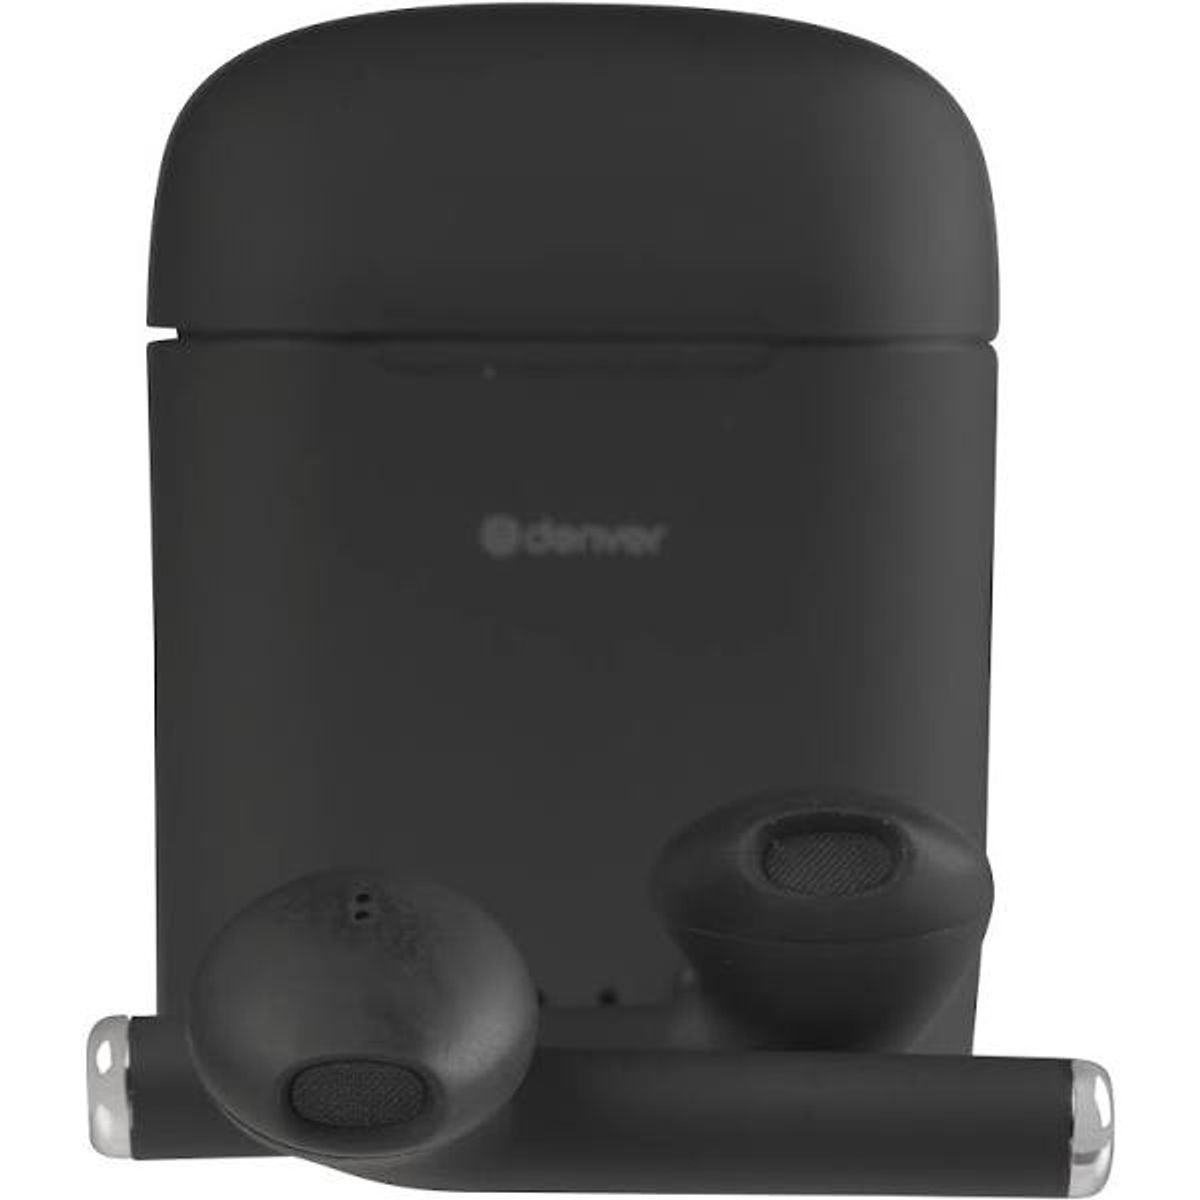 DENVER In-ear Schwarz, schwarz Bluetooth TWE-46 Kopfhörer